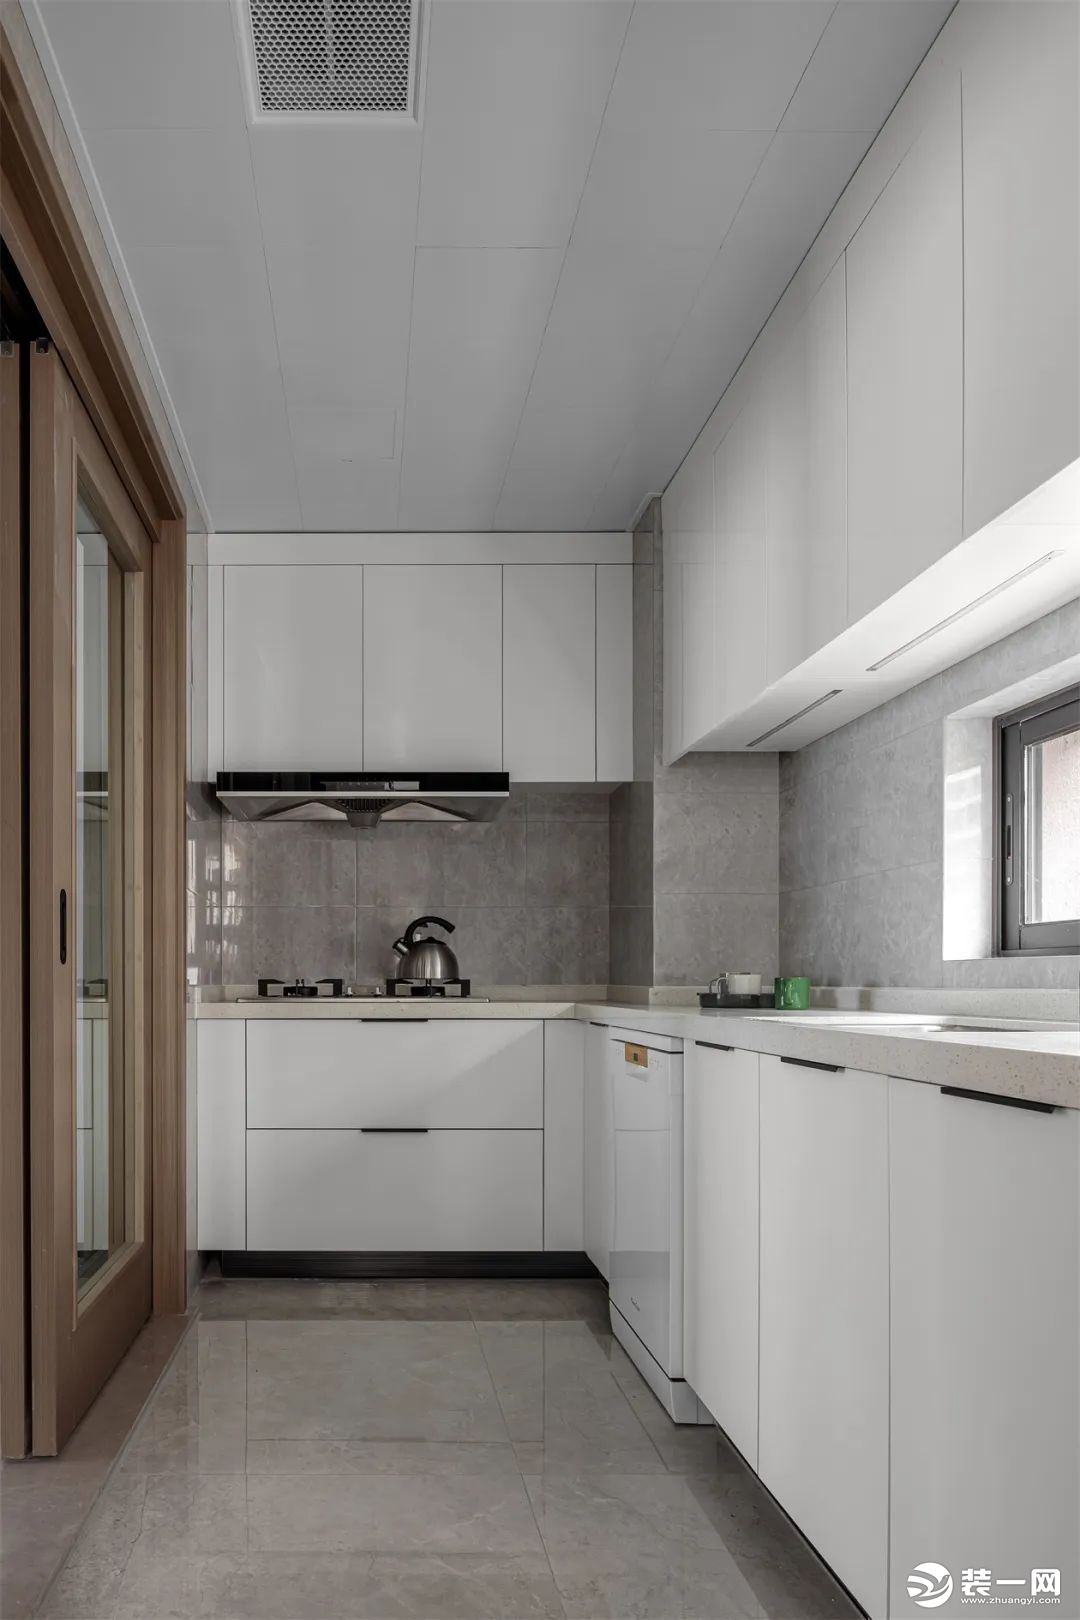 白色的收纳柜和操作台使厨房一眼望去洁净清爽，内部功能齐全，提供最舒适的烹饪环境。